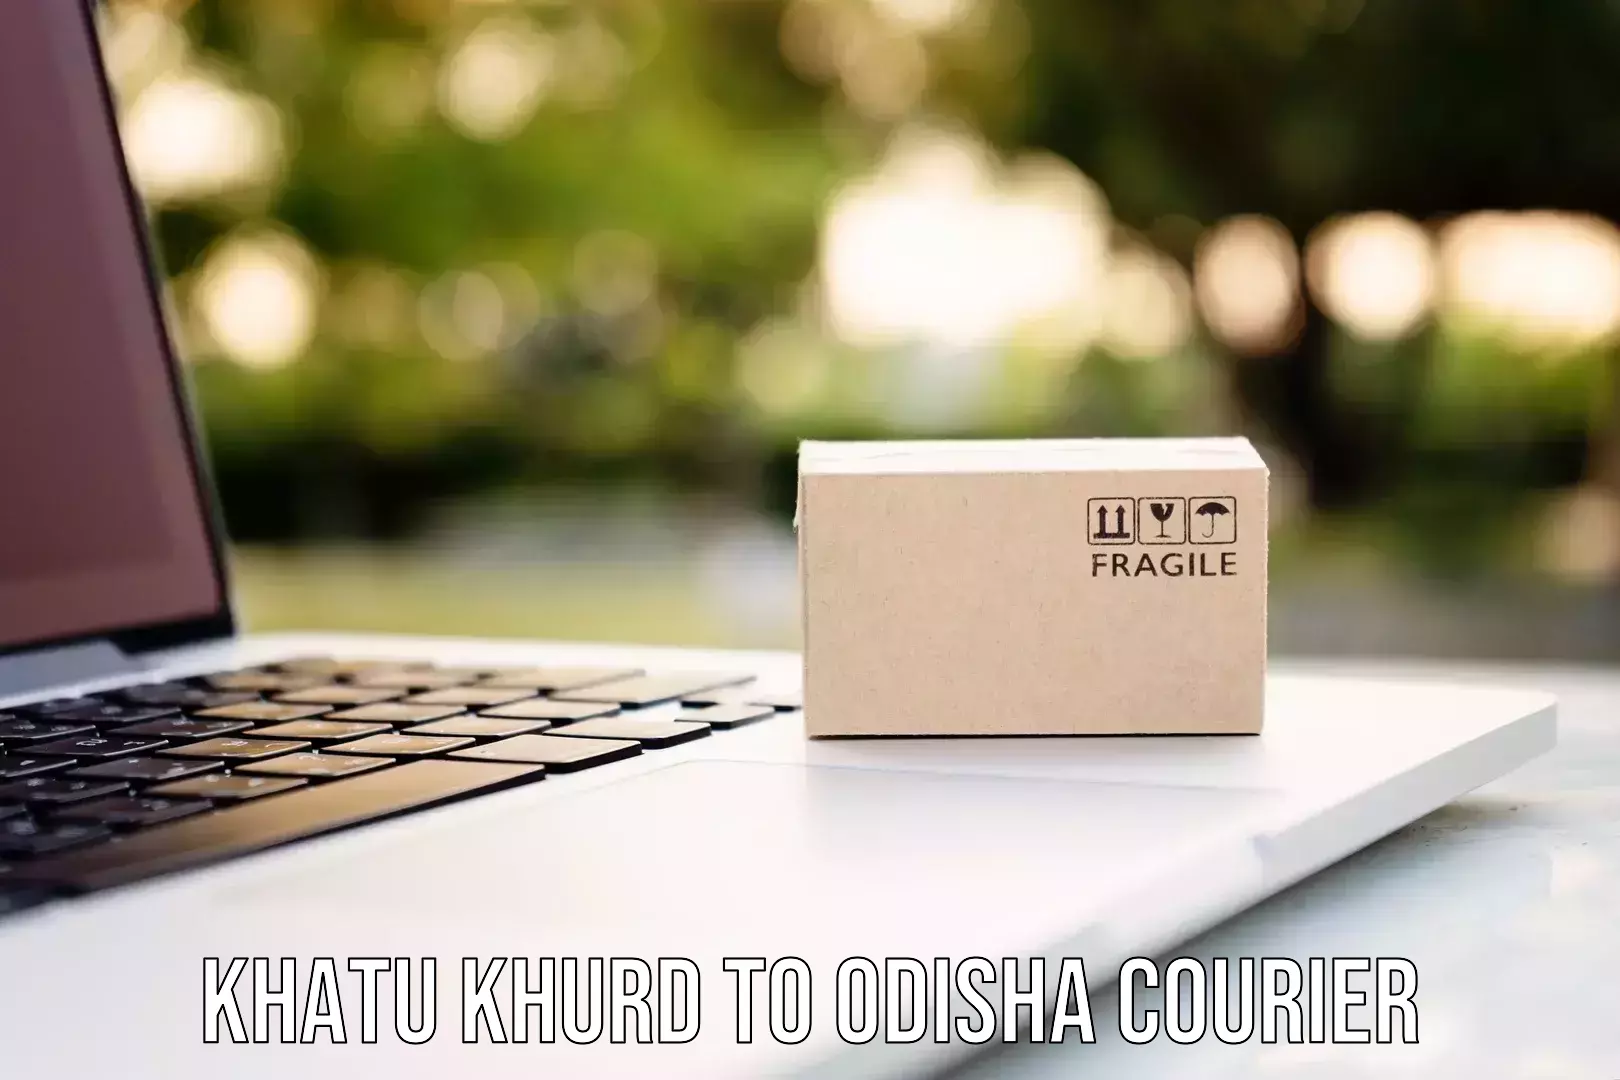 Lightweight courier Khatu Khurd to Kupari